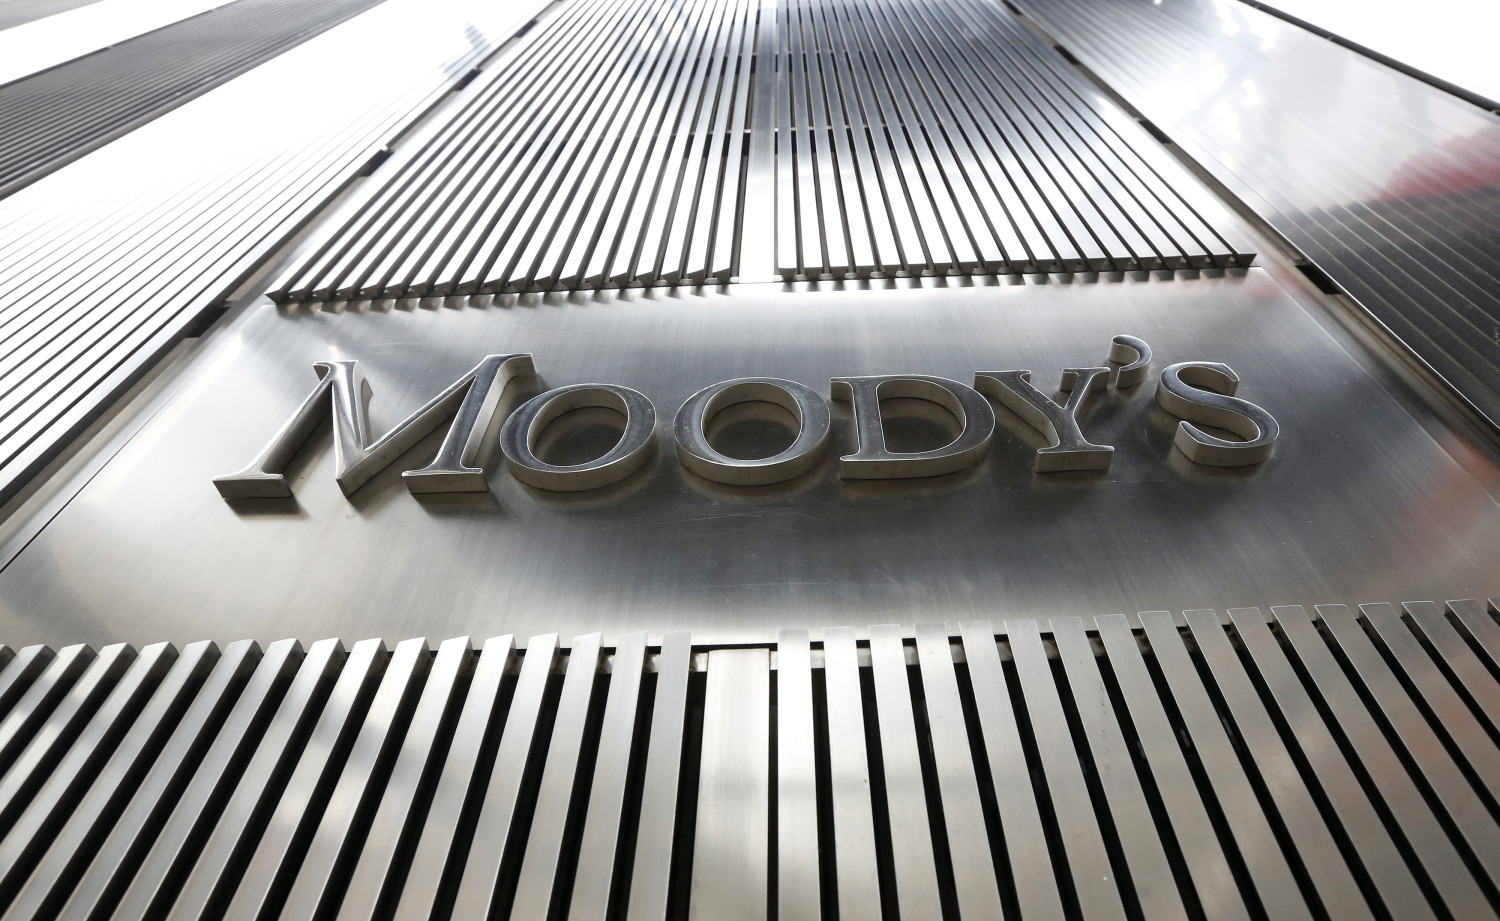 Los bancos suben: Moodys eleva el rating de CaixaBank, Bankinter, Sabadell y Unicaja